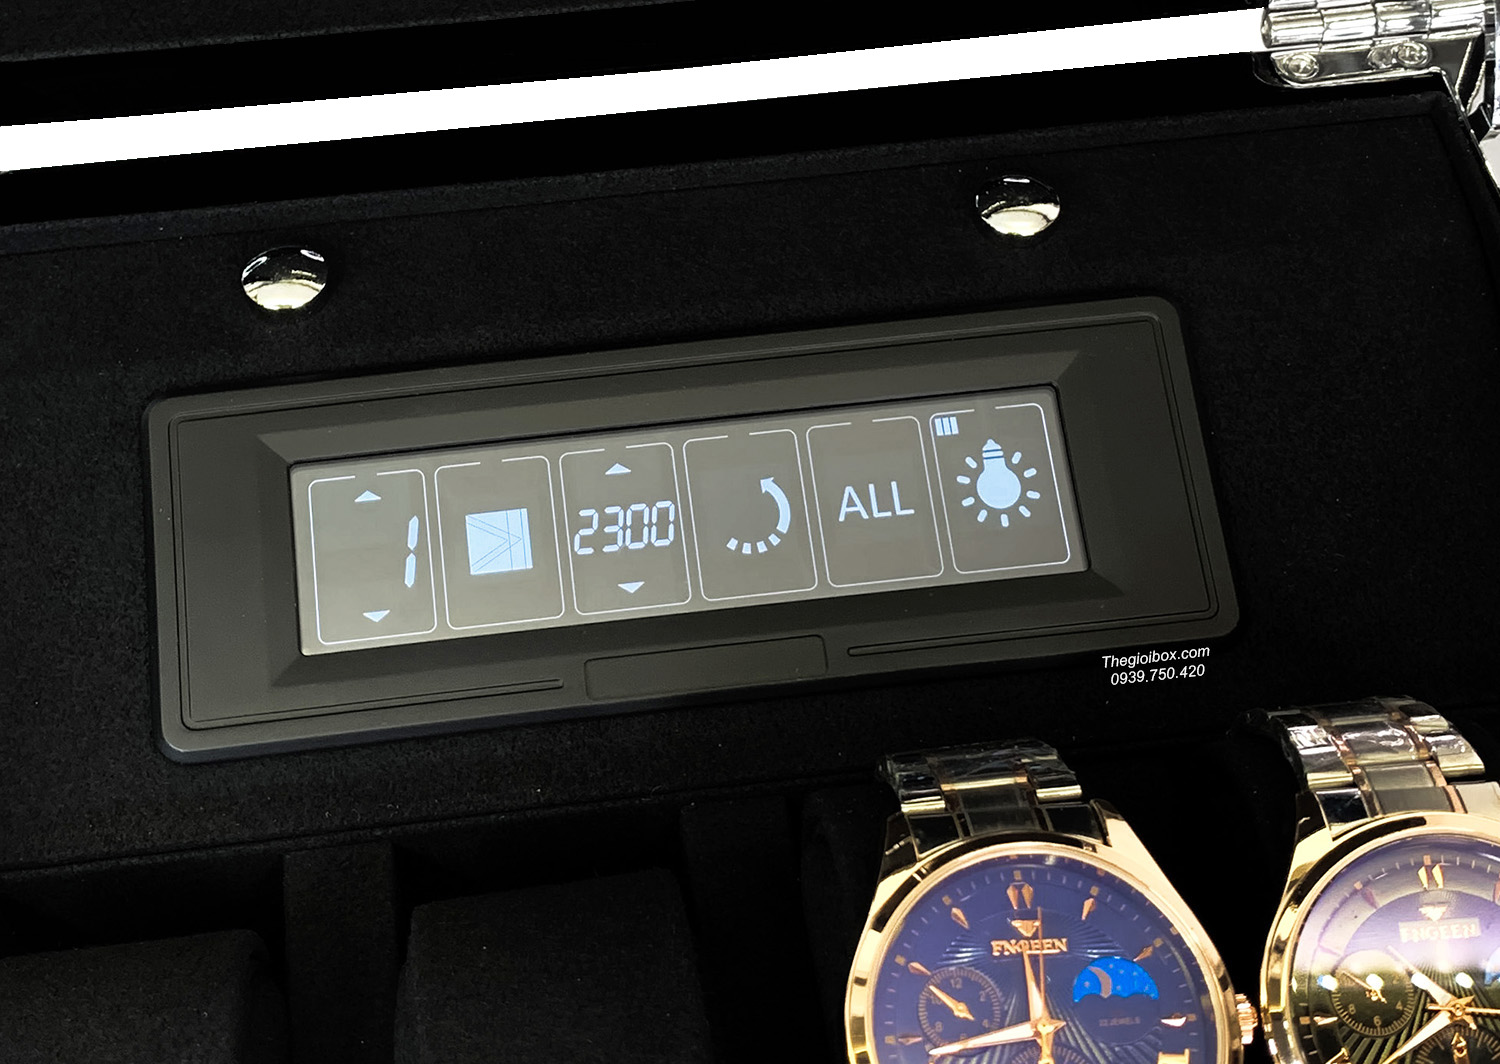 Tủ đựng đồng hồ cơ ACBOW cao cấp IW0606 6 xoay + 6 tĩnh kèm remote - màn hình cảm ứng - LED